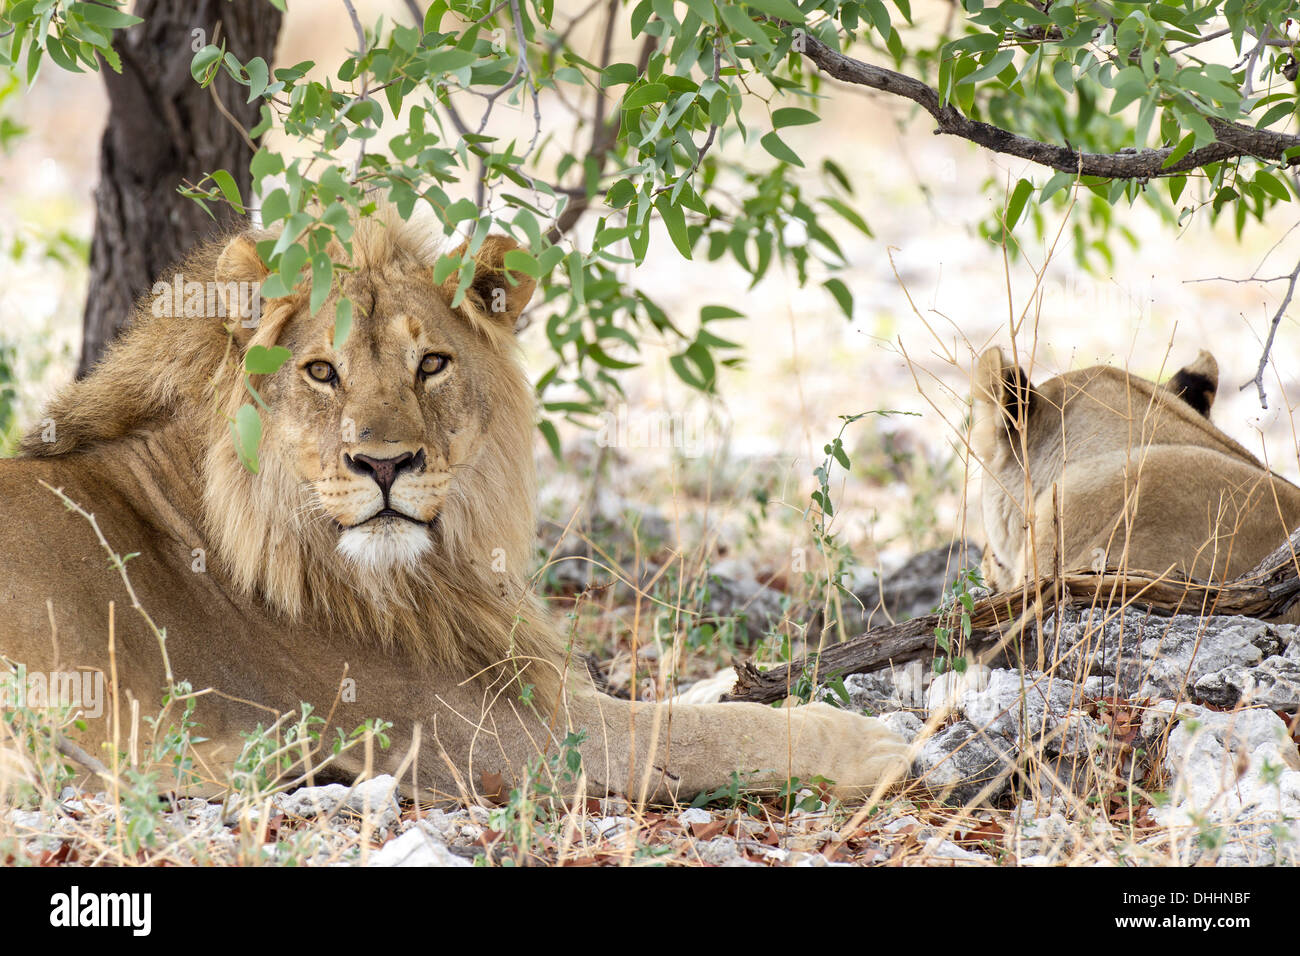 Lions (Panthera leo), male and female under a tree, Etosha National Park, Namibia Stock Photo